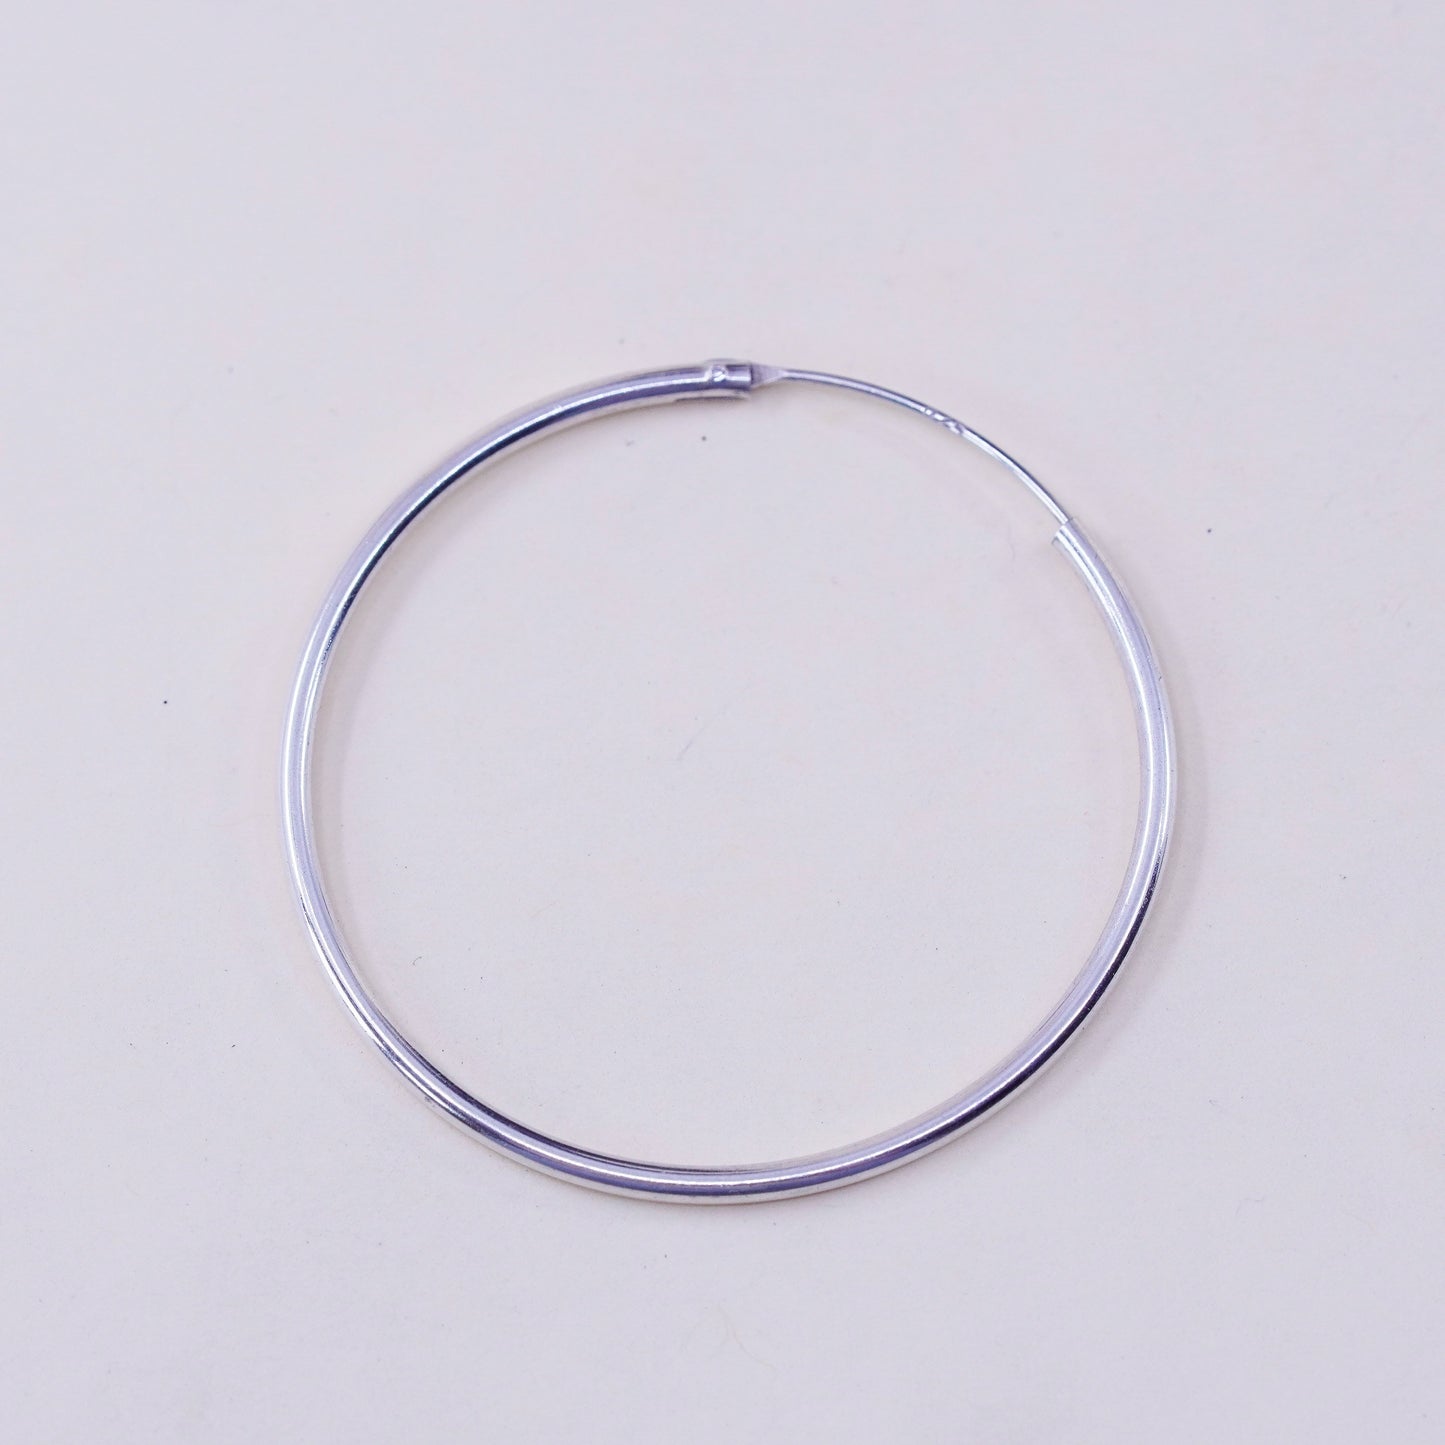 1.5” Vintage sterling 925 silver loop earrings, minimalist primitive hoops